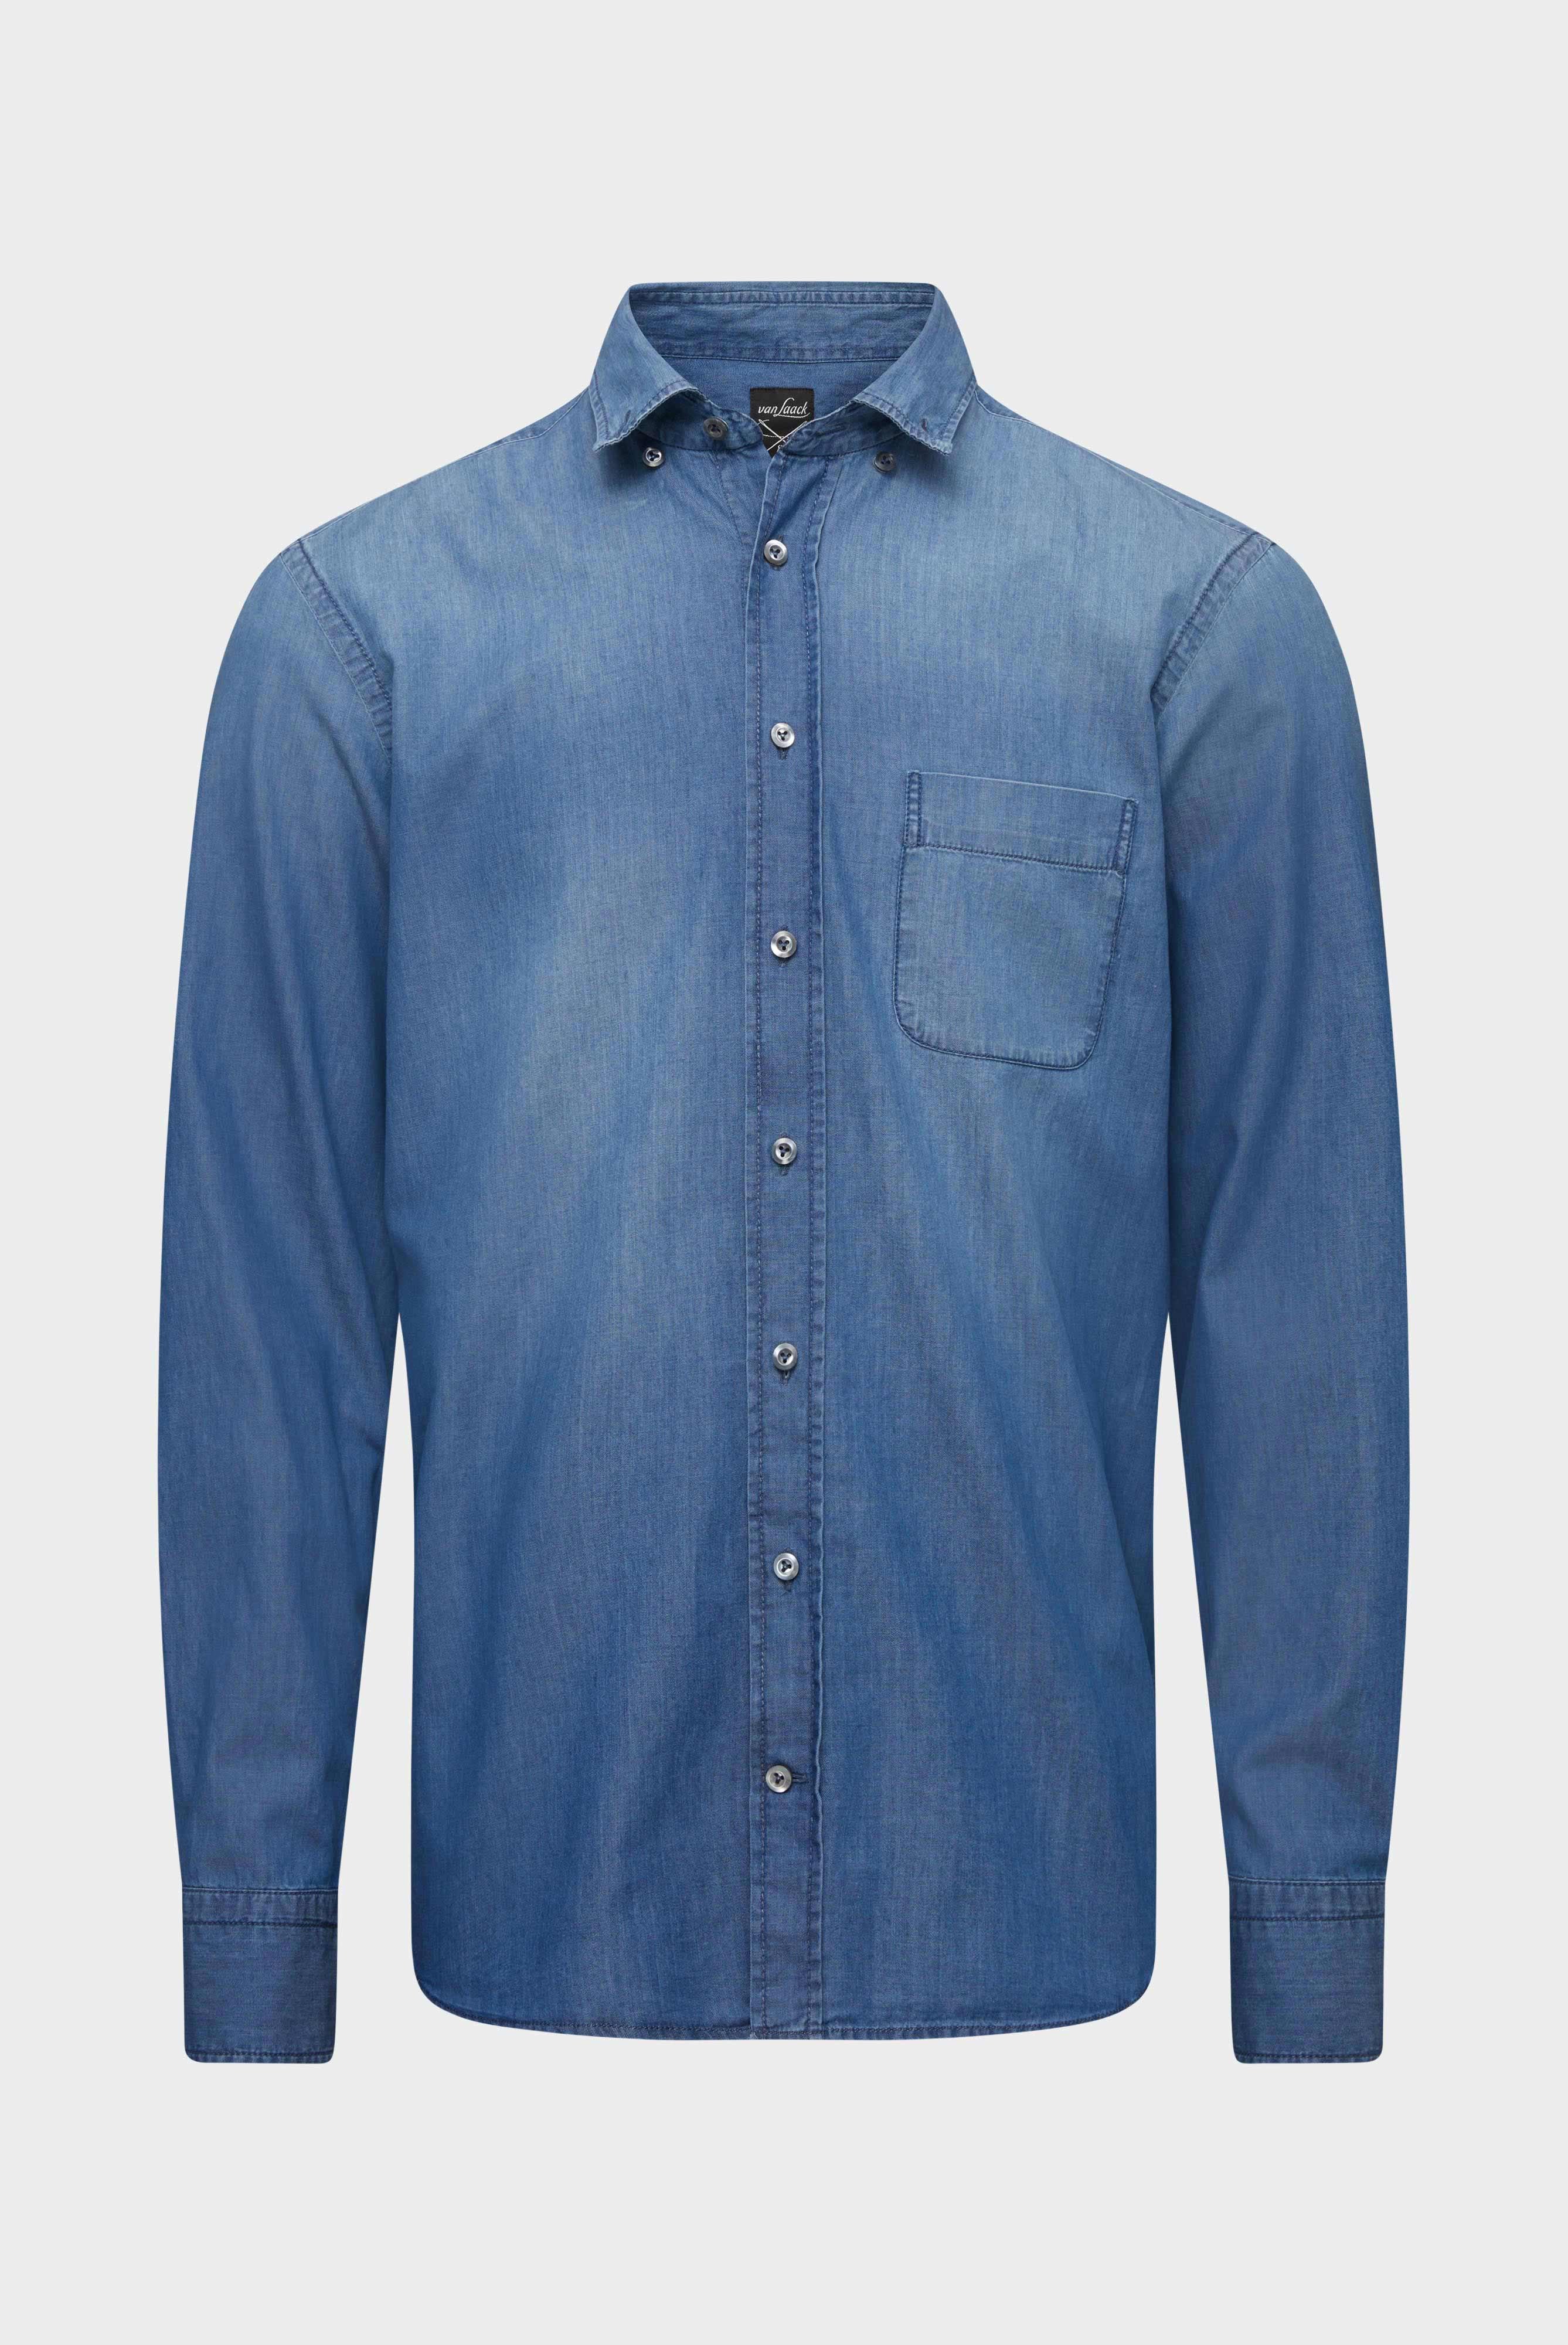 Casual Hemden+Jeans Hemd Tailor Fit+20.2013.ET.155330.740.38